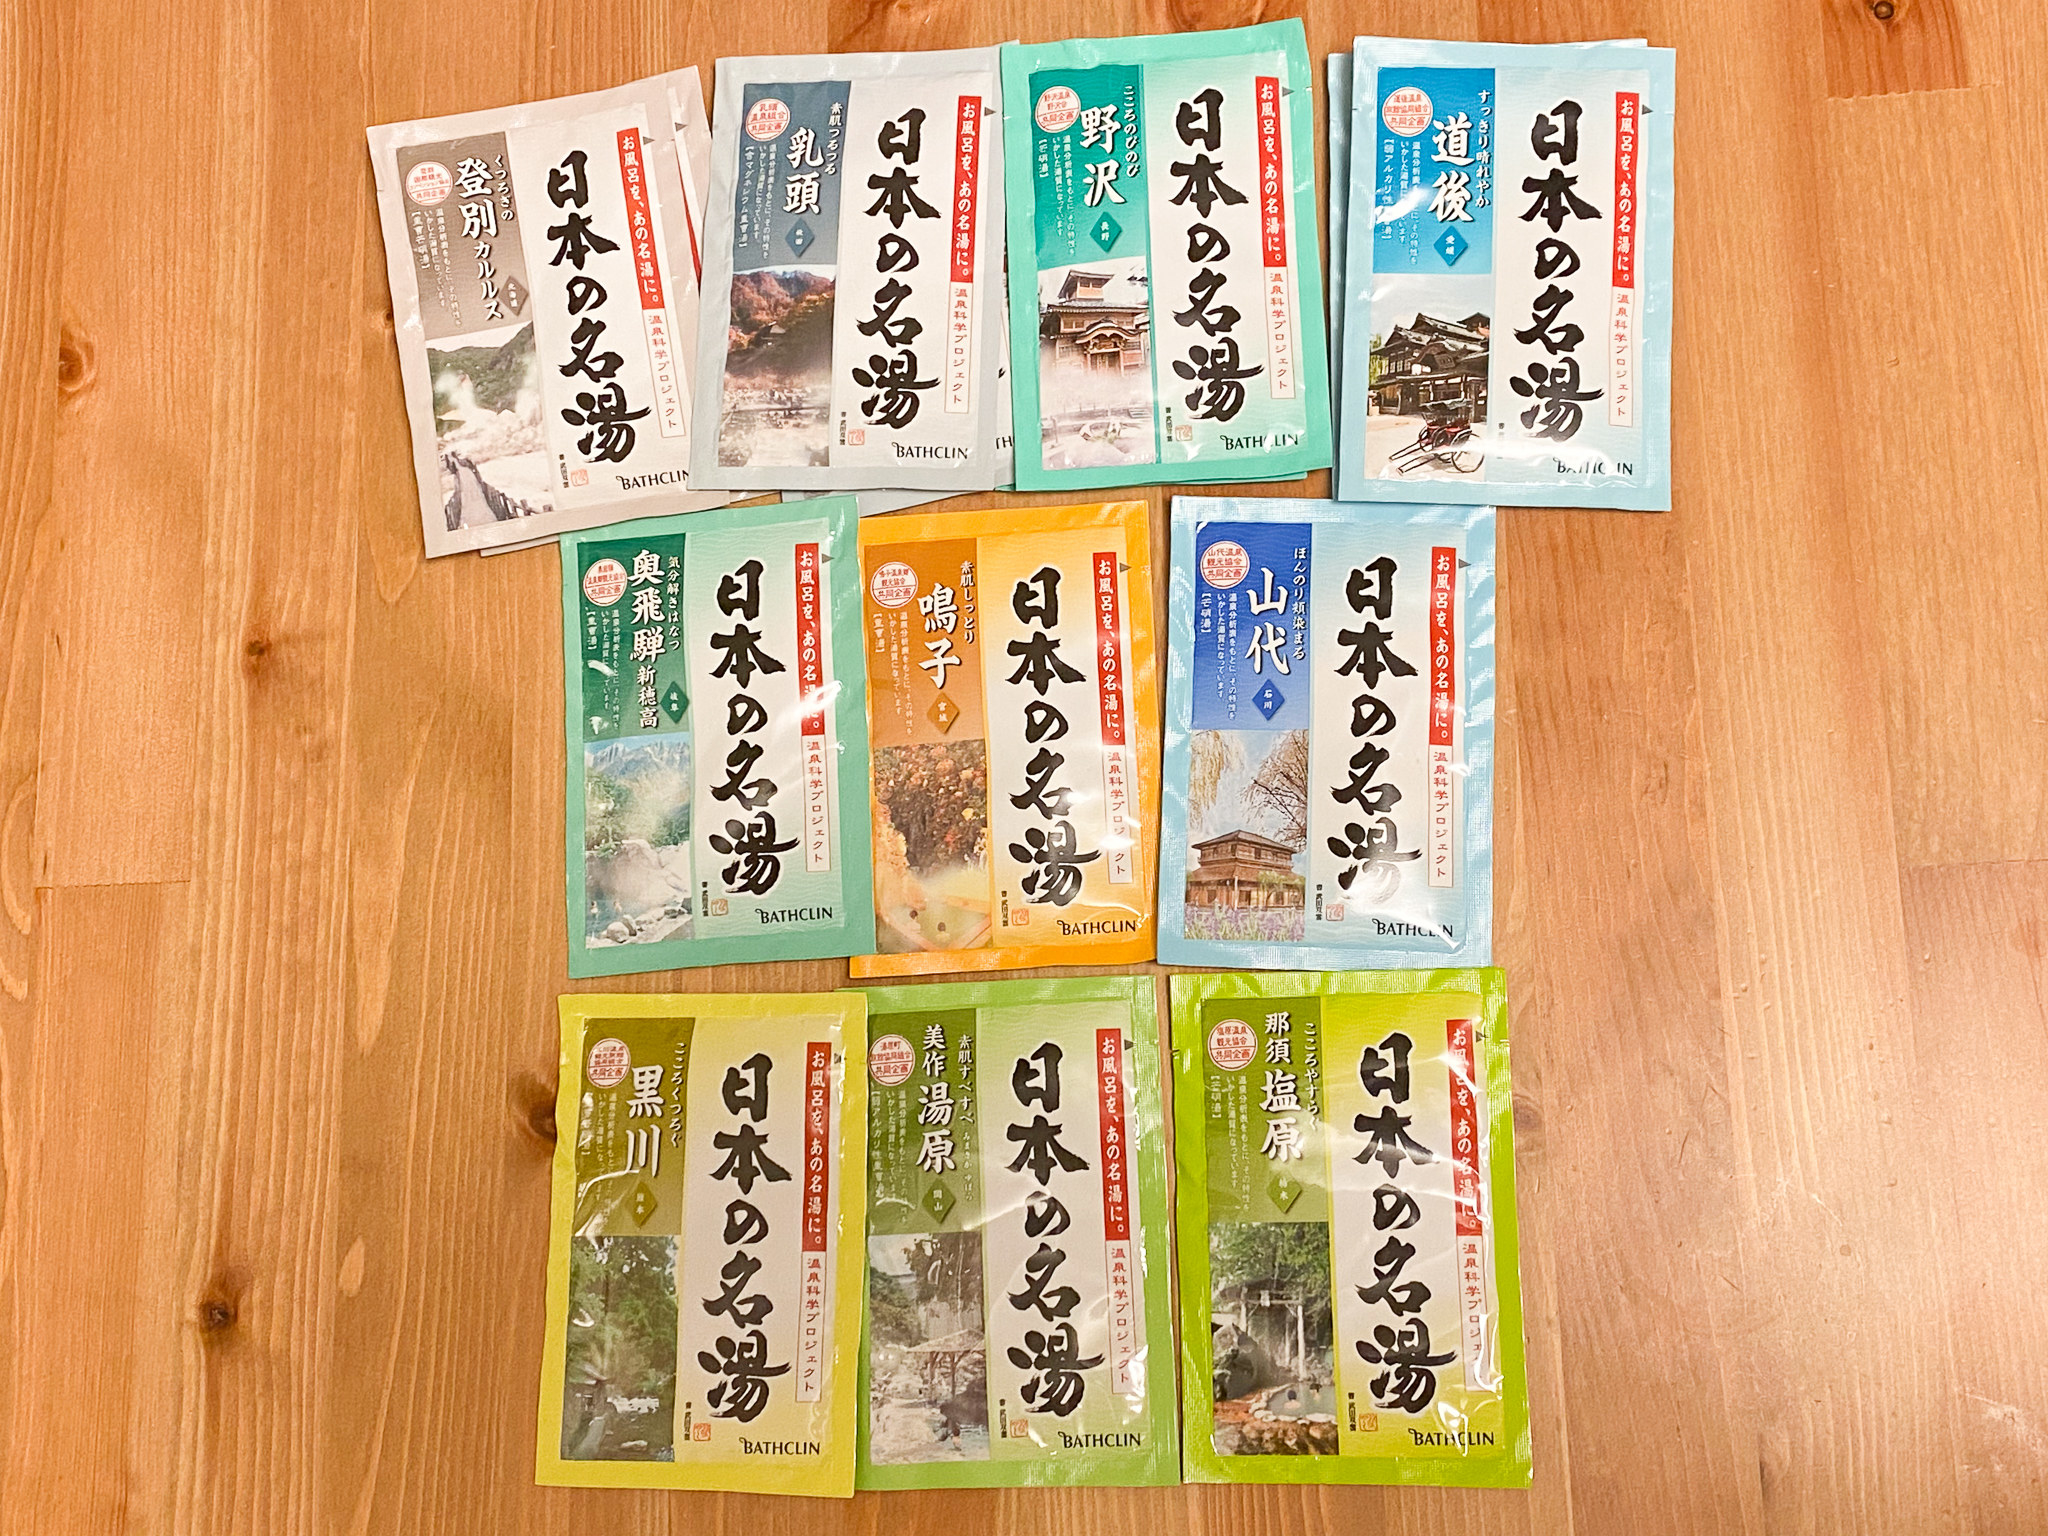 1回43円で温泉旅行気分に】日本の名湯入浴剤で在宅の疲れをリフレッシュ